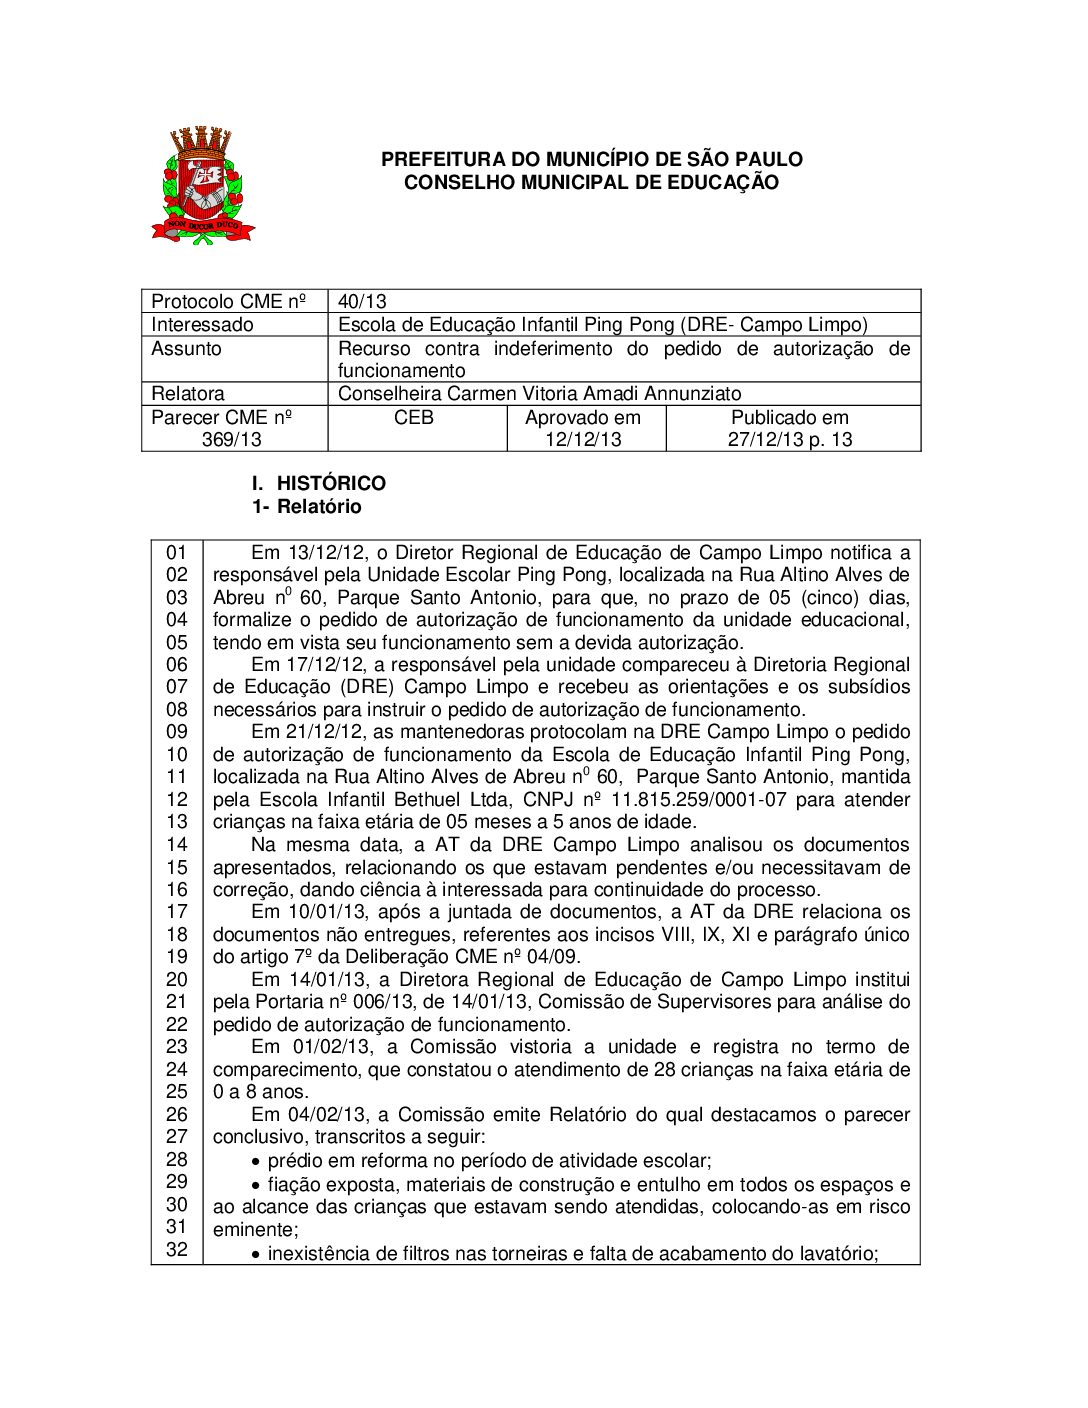 Parecer CME nº 369/2013 - Escola de Educação Infantil Ping Pong (DRE Campo Limpo) - Recurso contra indeferimento do pedido de autorização de funcionamento 